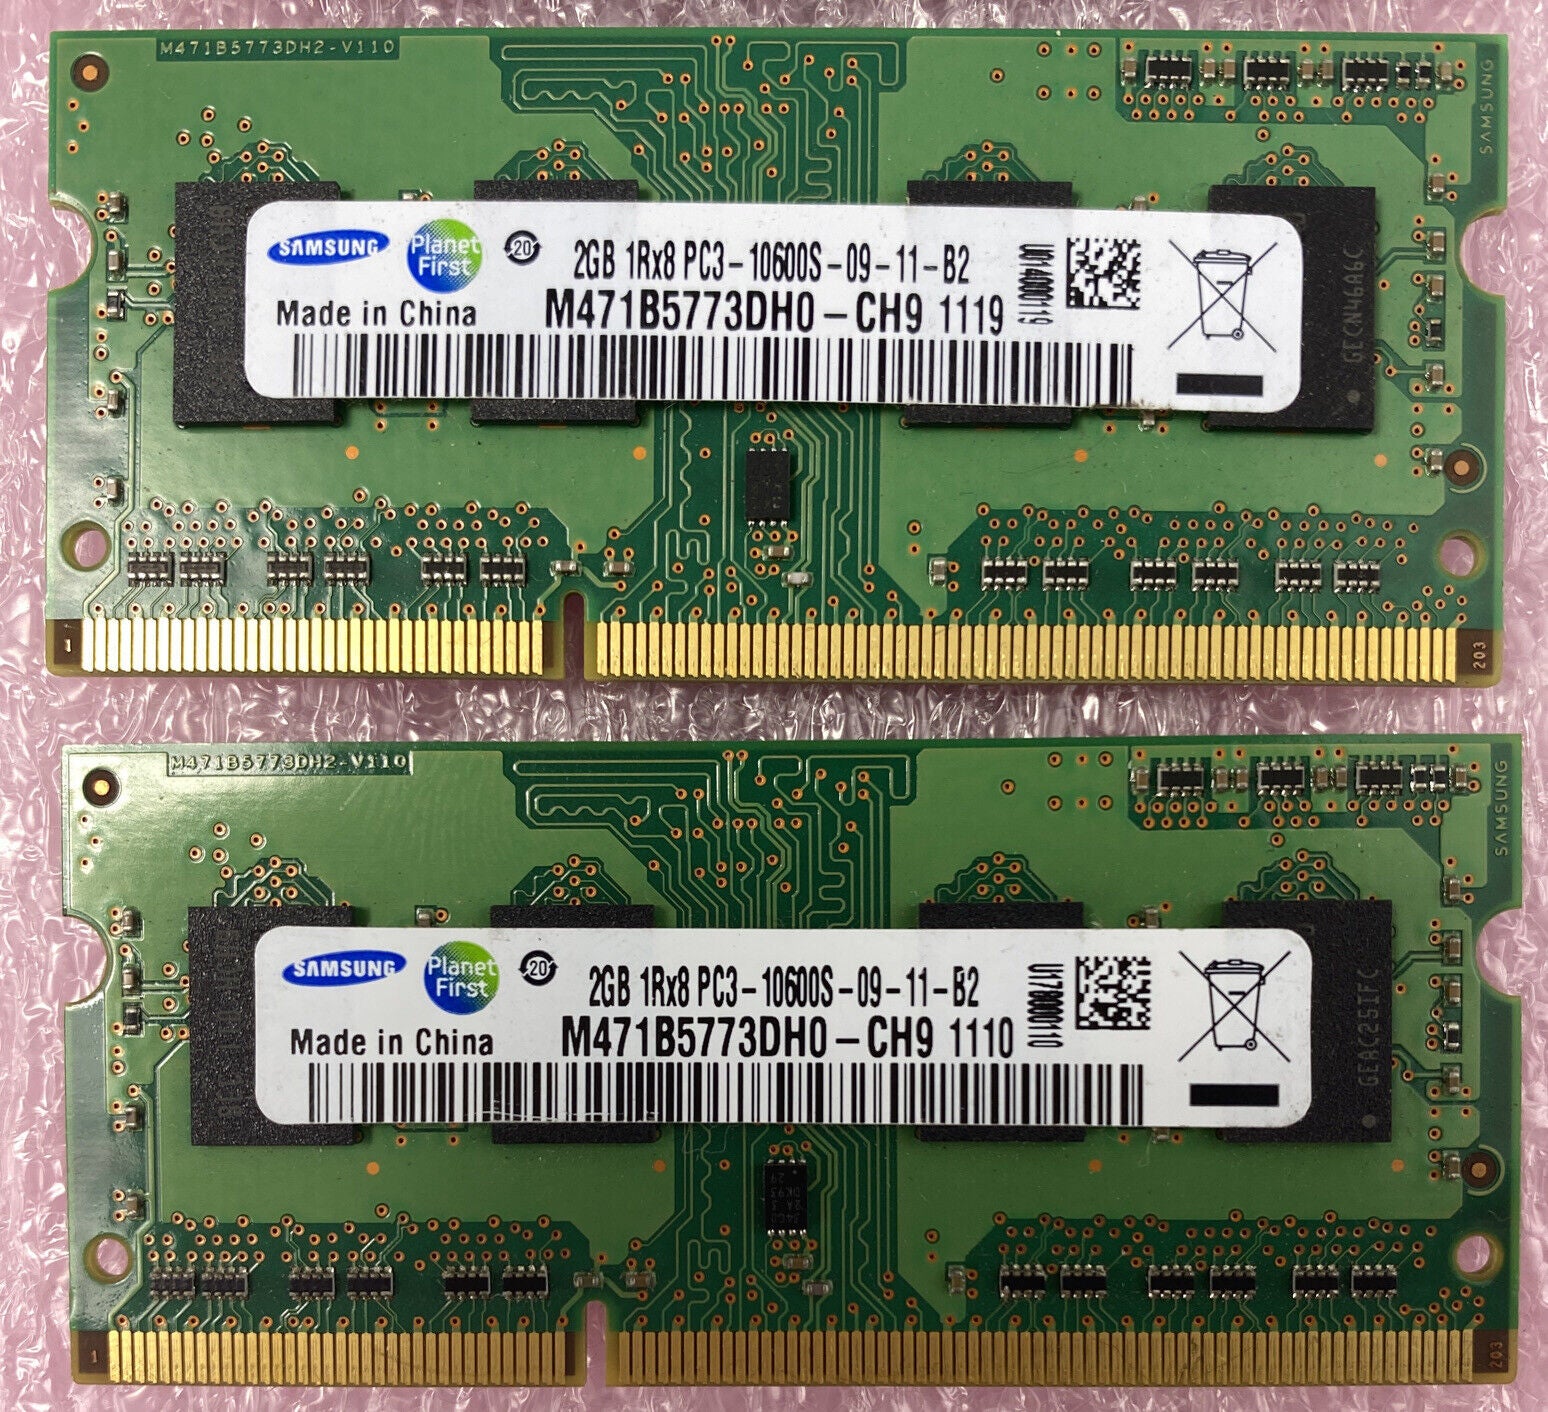 Lot( 4 ) 2GB Samsung M471B5773DH0-CH9 PC3-10600S DDR3 1333MHz 204pin SO-DIMM RAM